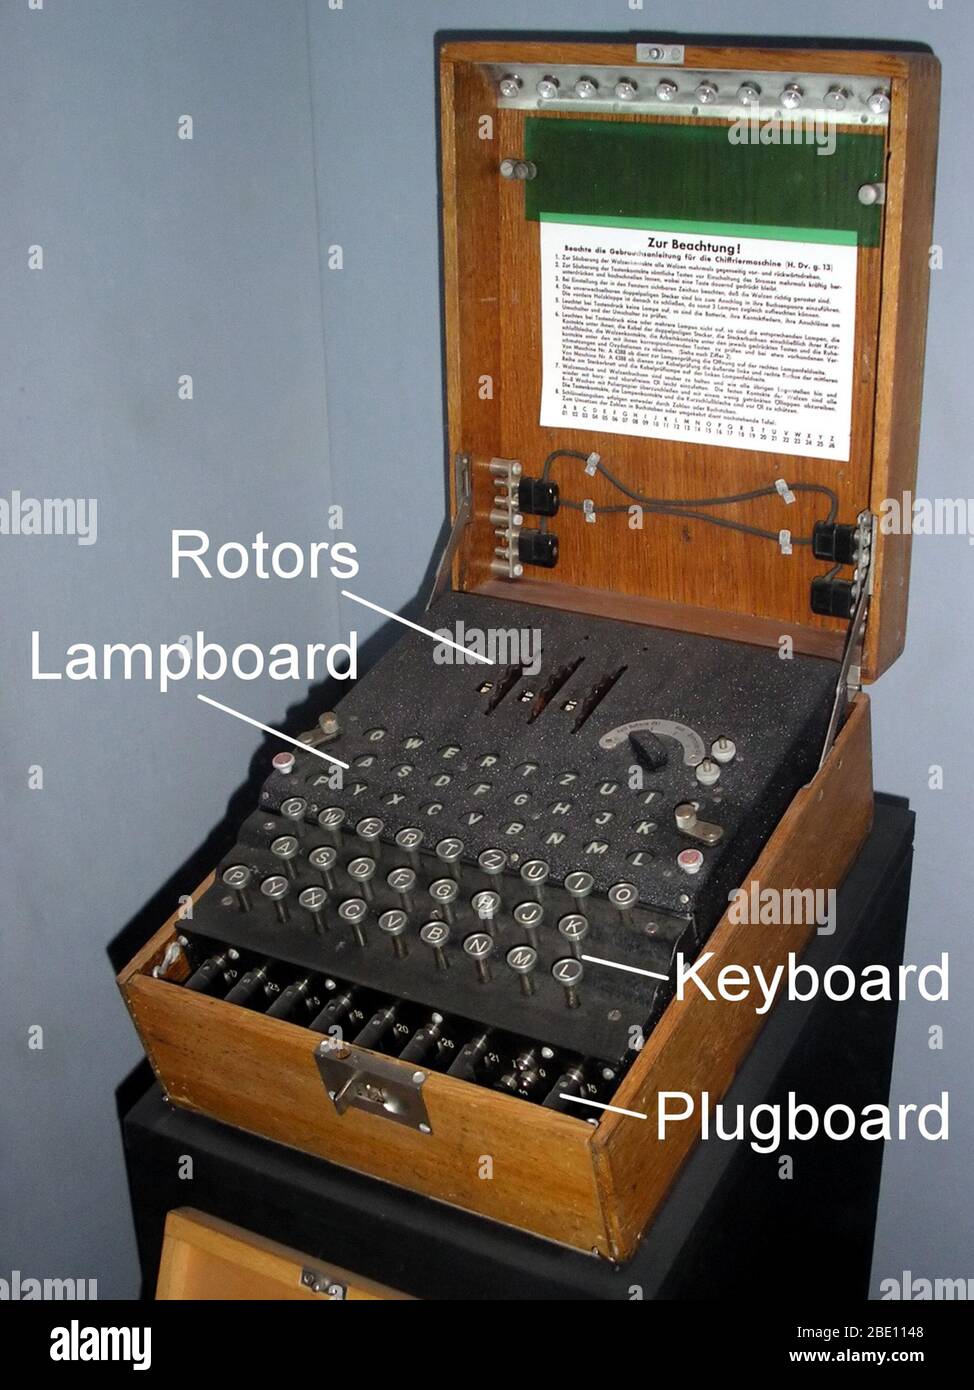 Die Enigma-Maschinen waren eine Reihe von elektromechanischen Rotorchipher-Maschinen, die in der frühen bis Mitte des 20. Jahrhunderts entwickelt und zum Schutz der kommerziellen, diplomatischen und militärischen Kommunikation eingesetzt wurden. Enigma wurde am Ende des Ersten Weltkriegs vom deutschen Ingenieur Arthur Scherbius erfunden.frühe Modelle wurden ab den frühen 1920er Jahren kommerziell verwendet und von Militär- und Regierungsdiensten mehrerer Länder, insbesondere Nazi-Deutschland vor und während des Zweiten Weltkriegs, übernommen Es wurden mehrere verschiedene Enigma-Modelle produziert, aber die deutschen Militärmodelle mit einem Steckbrett waren die komplexesten. Alan Turing w Stockfoto